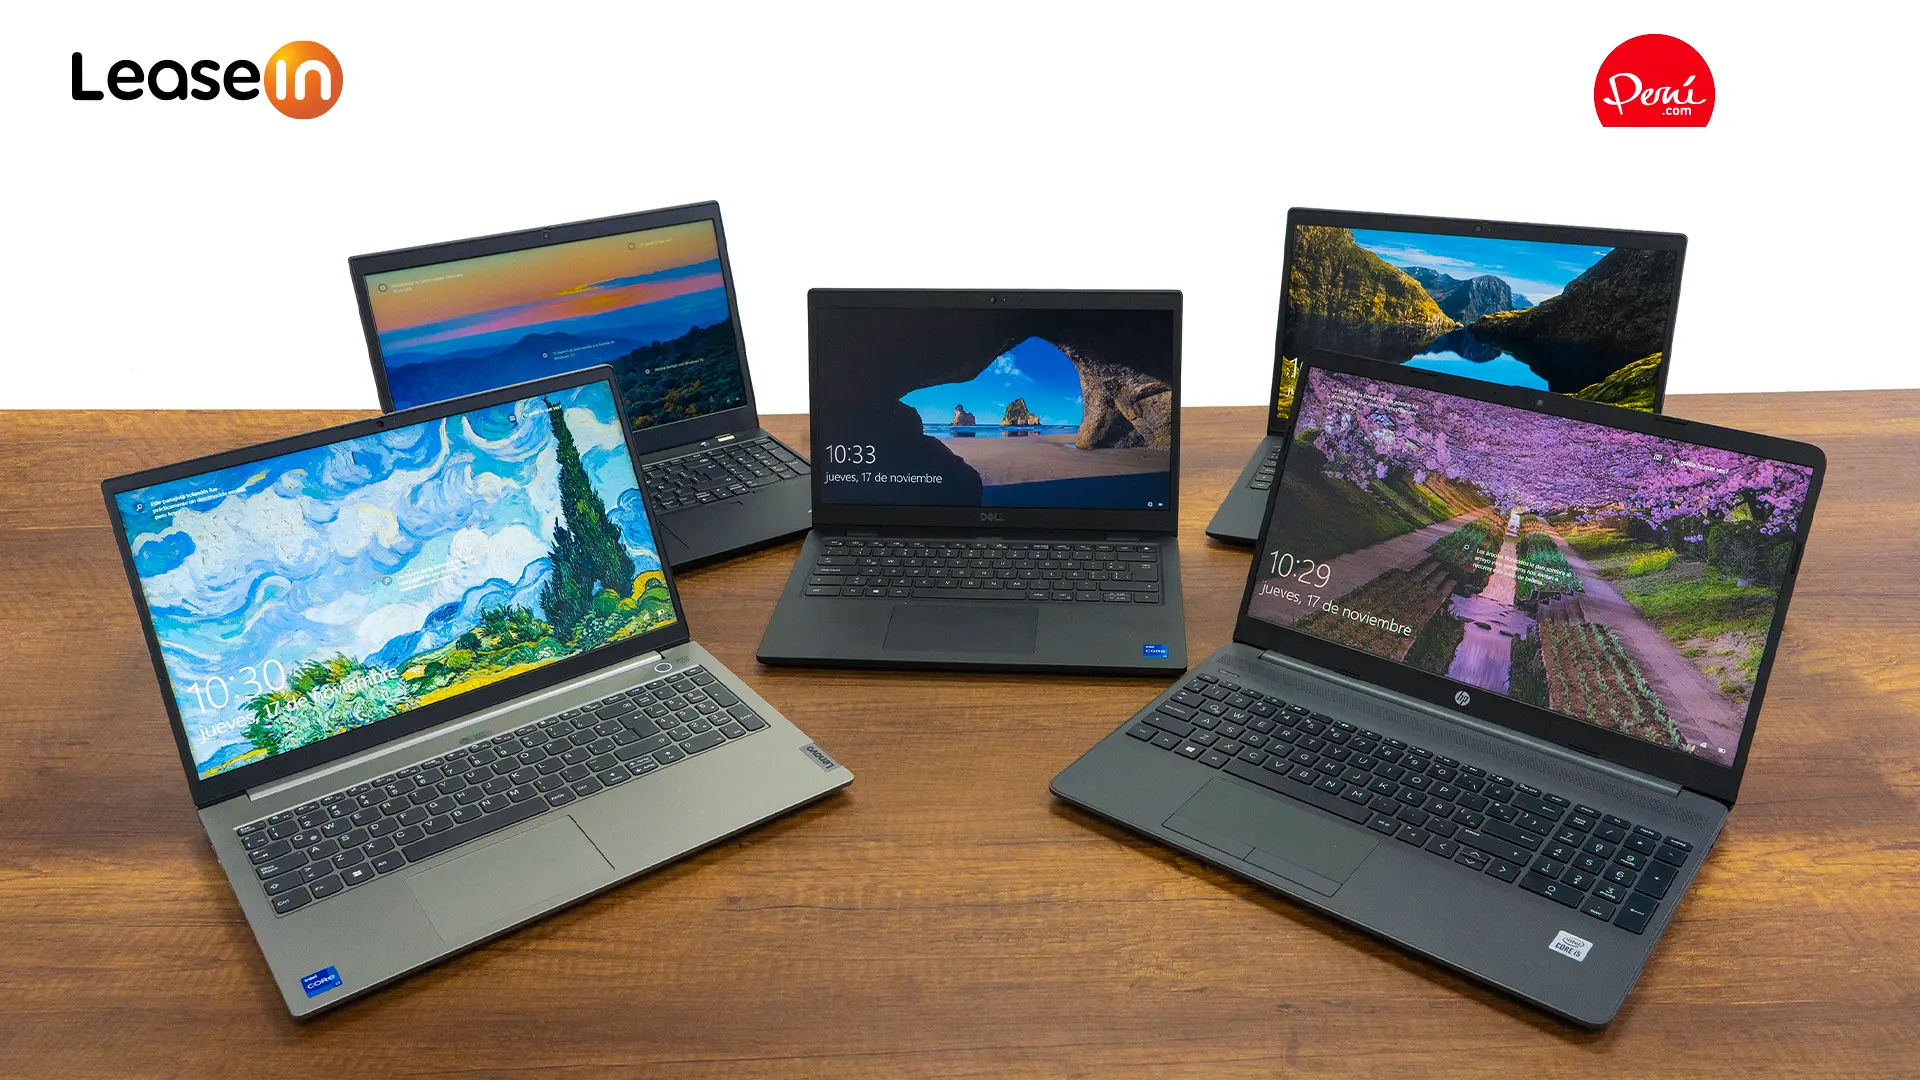 ¿Trabajo desde casa? Estas son las 5 laptops más solicitadas por empresas